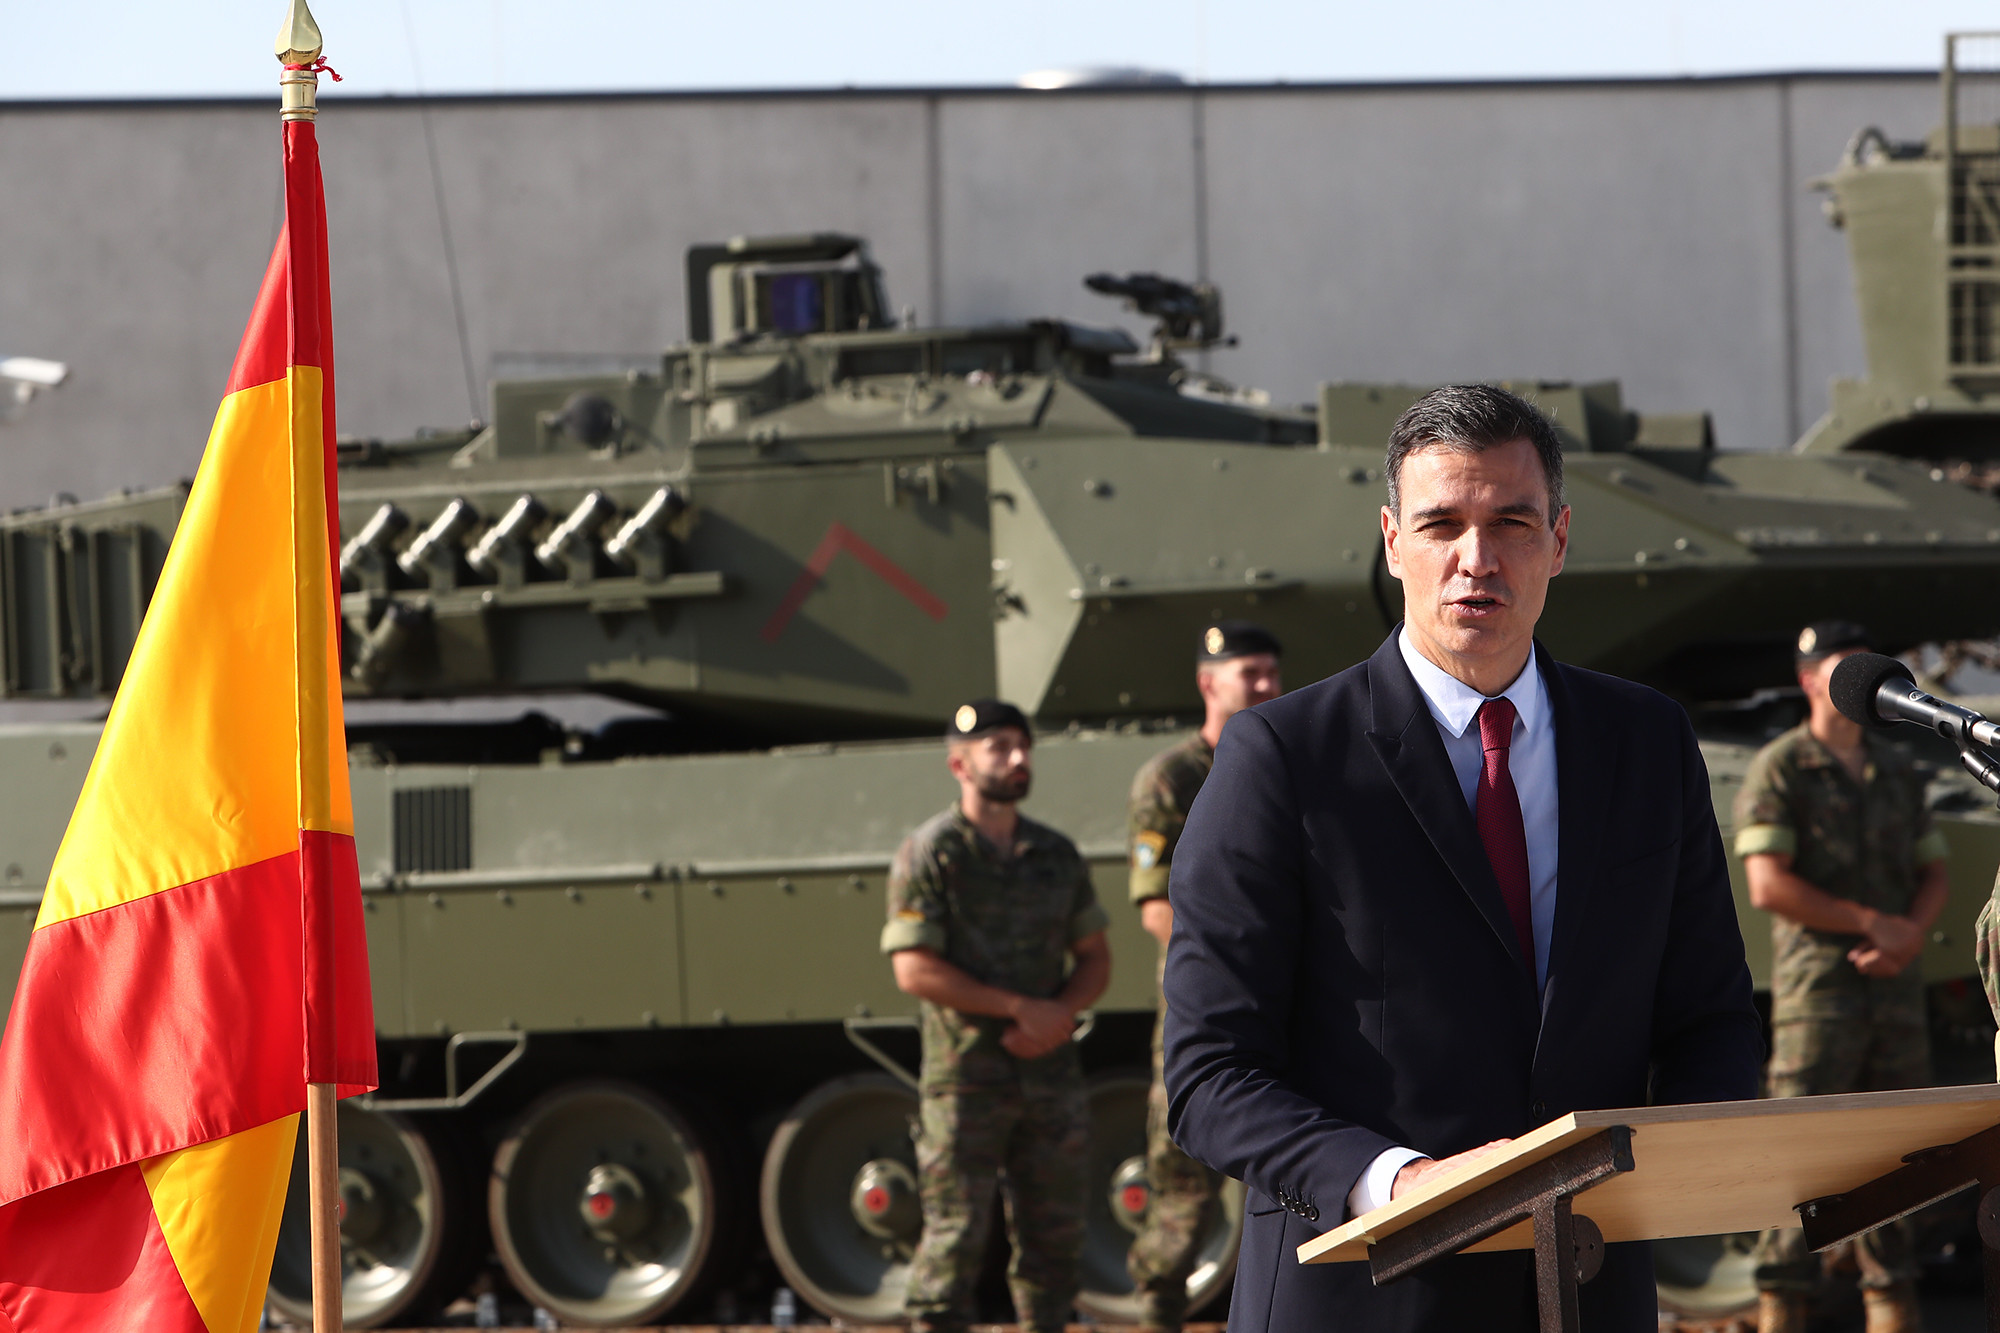 COMUNICAT del Centre Delàs sobre l’augment de la despesa militar anunciada pel Govern espanyol